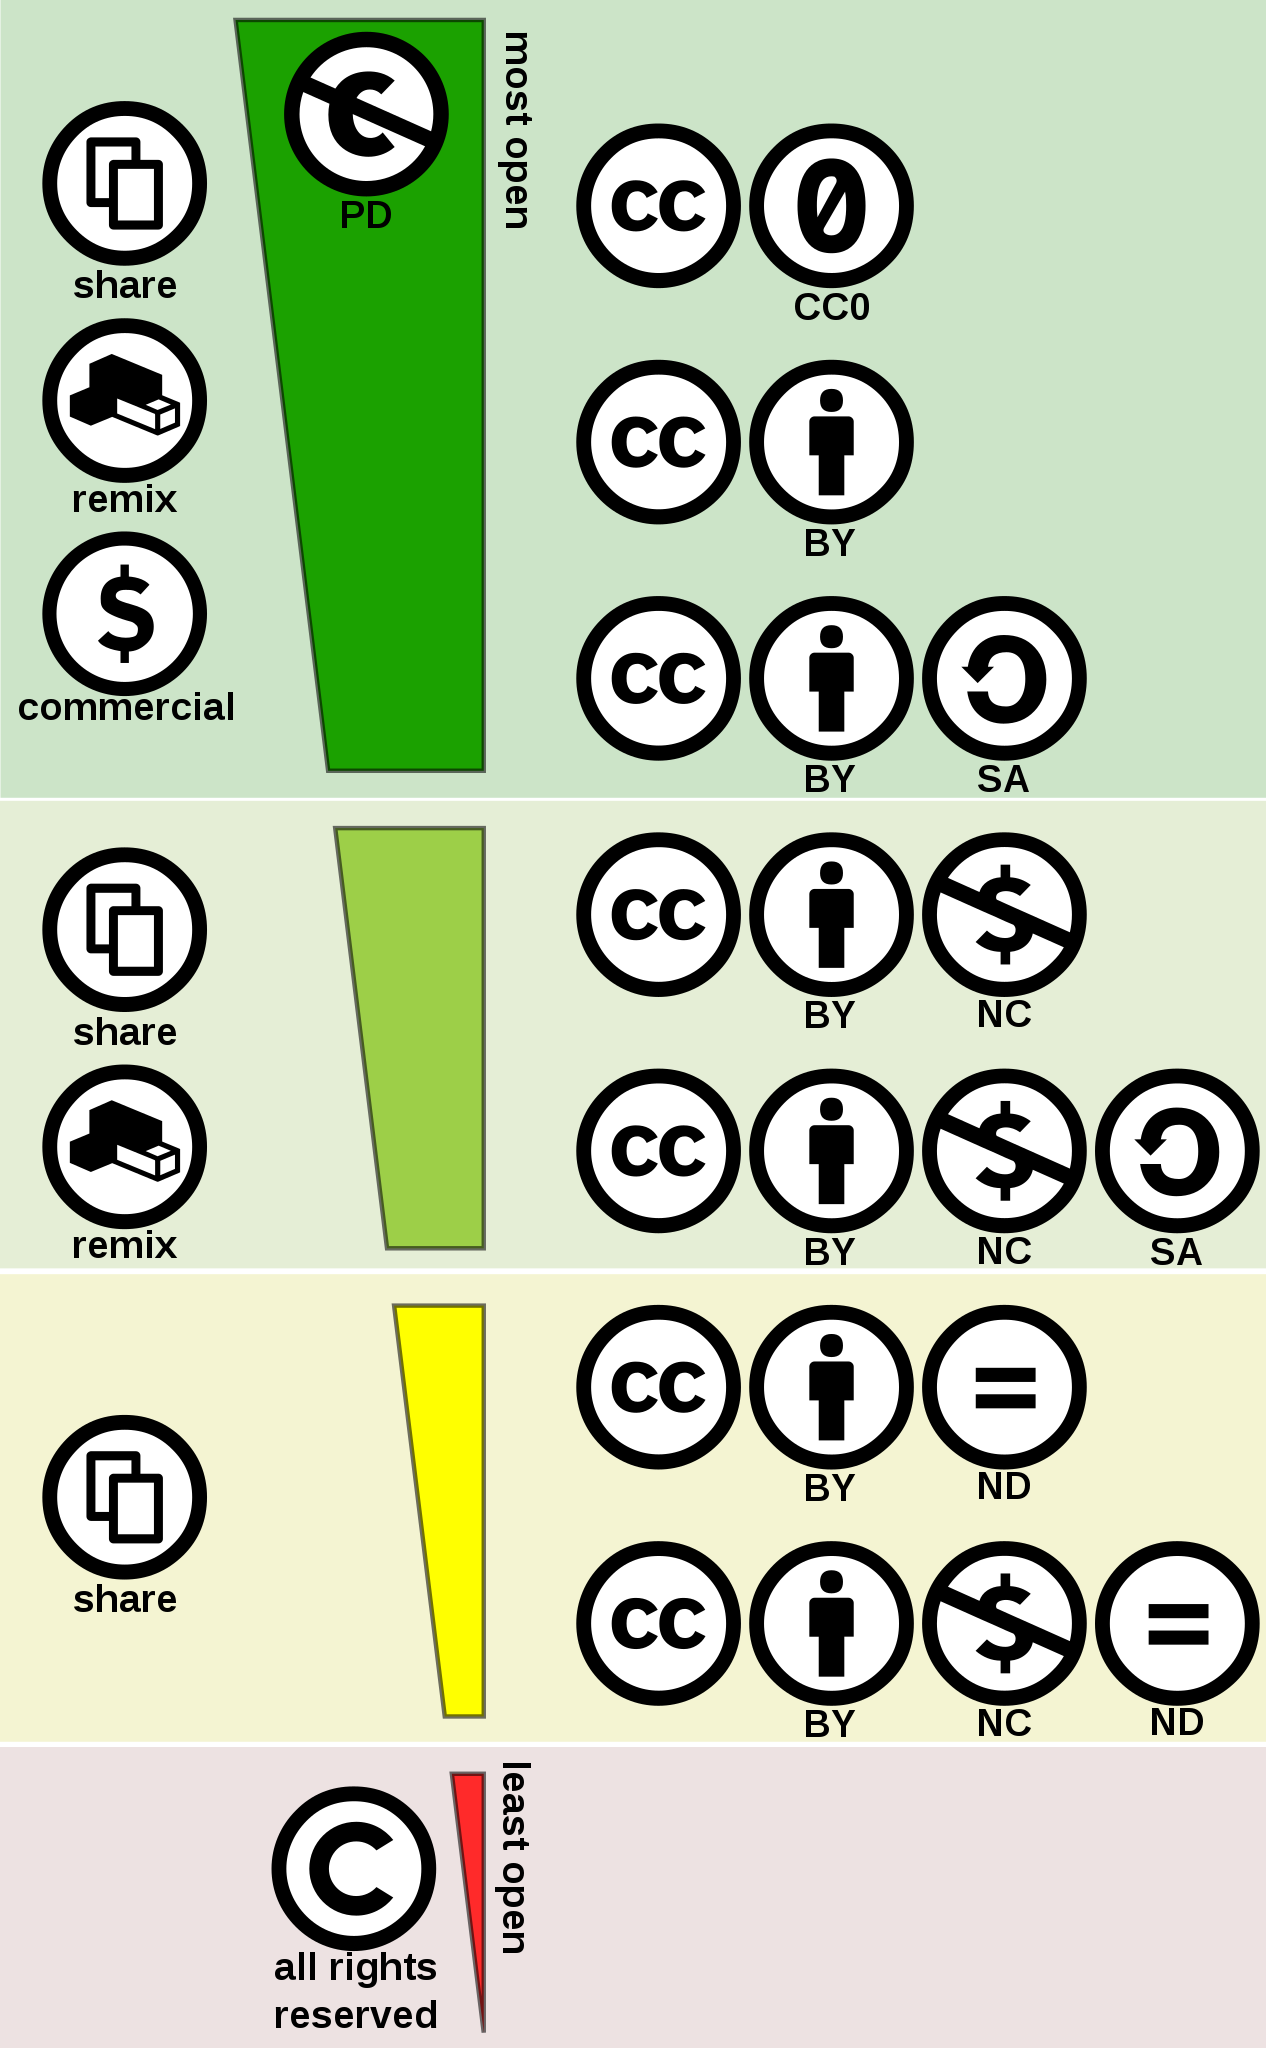 het overzicht van de verschillende Creative Commons licenties met in het groen de licenties die geschikt zijn voor Wikipedia.